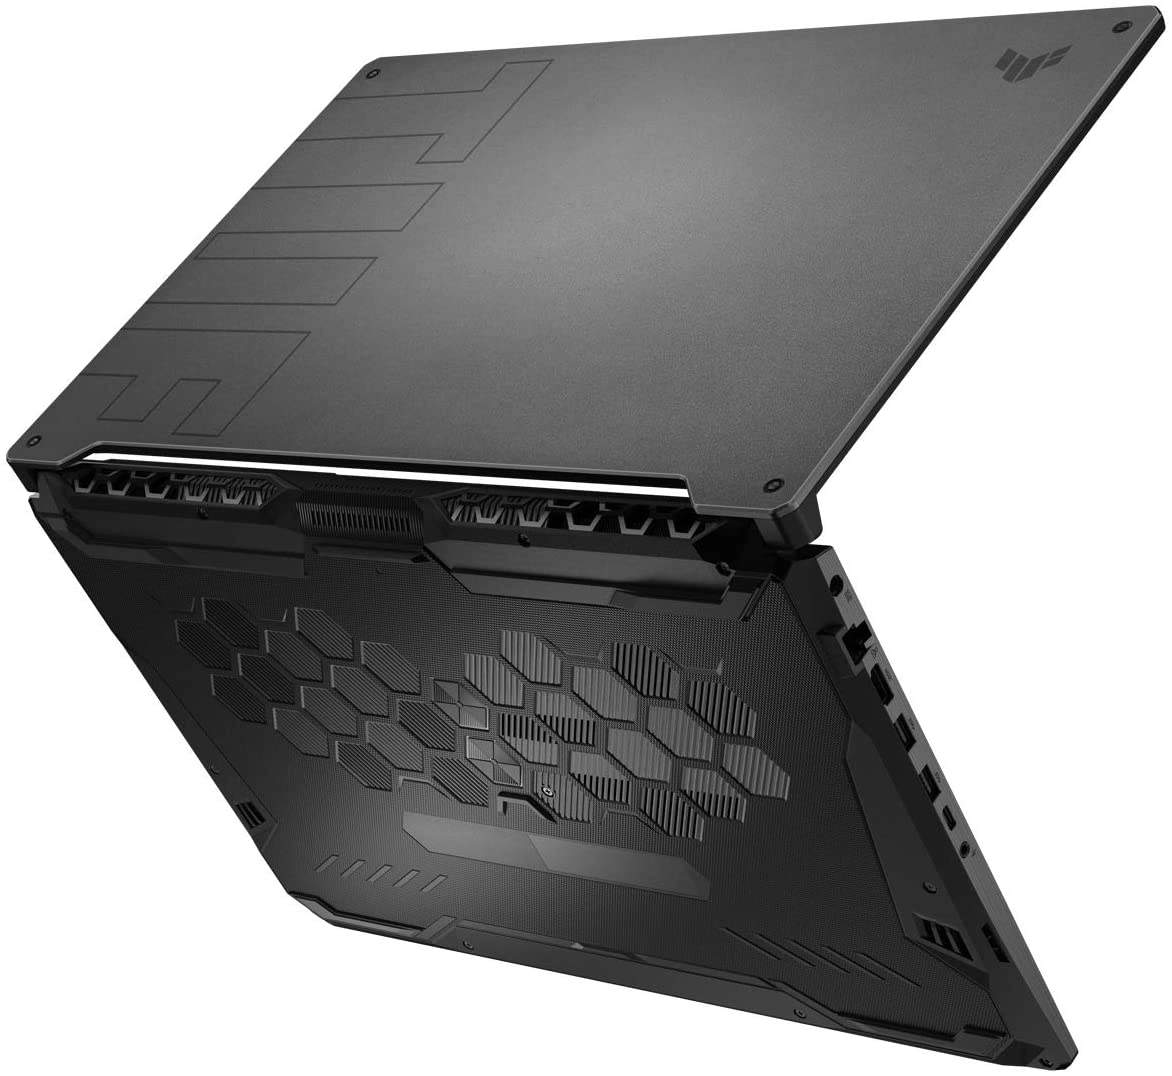 Asus FA706QM-HX001 laptop image